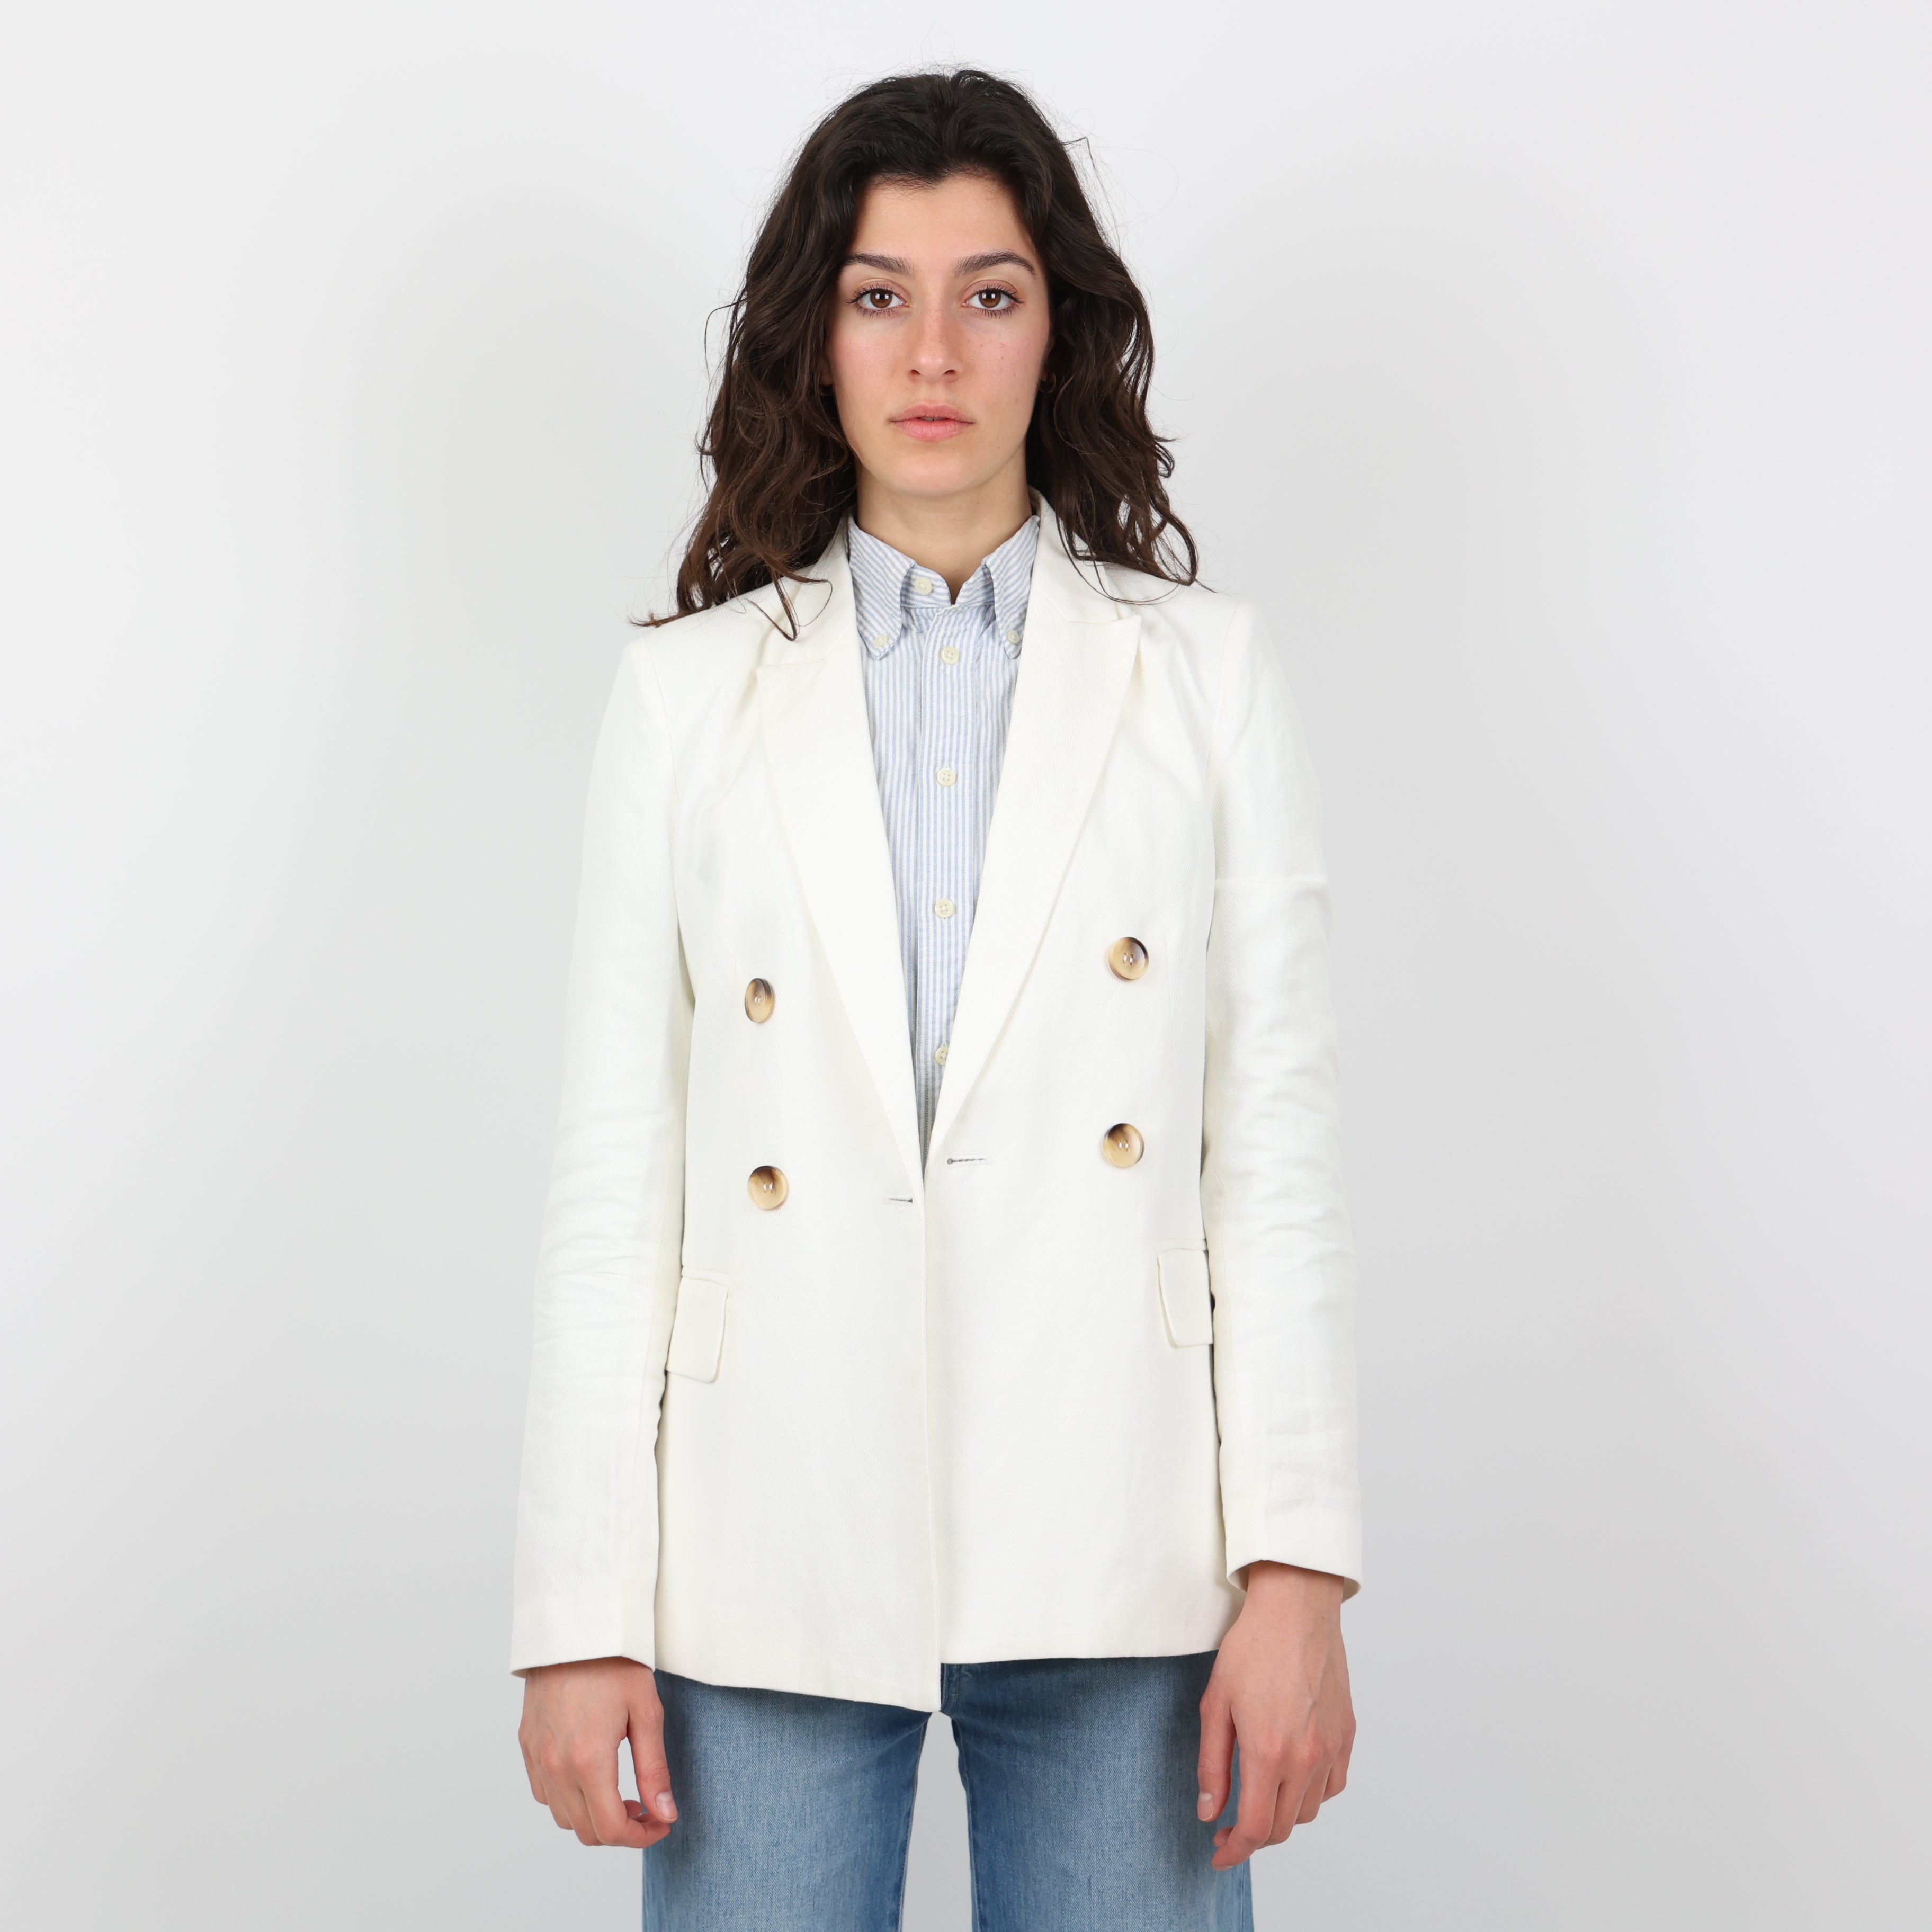 Jacket, UK Size 8